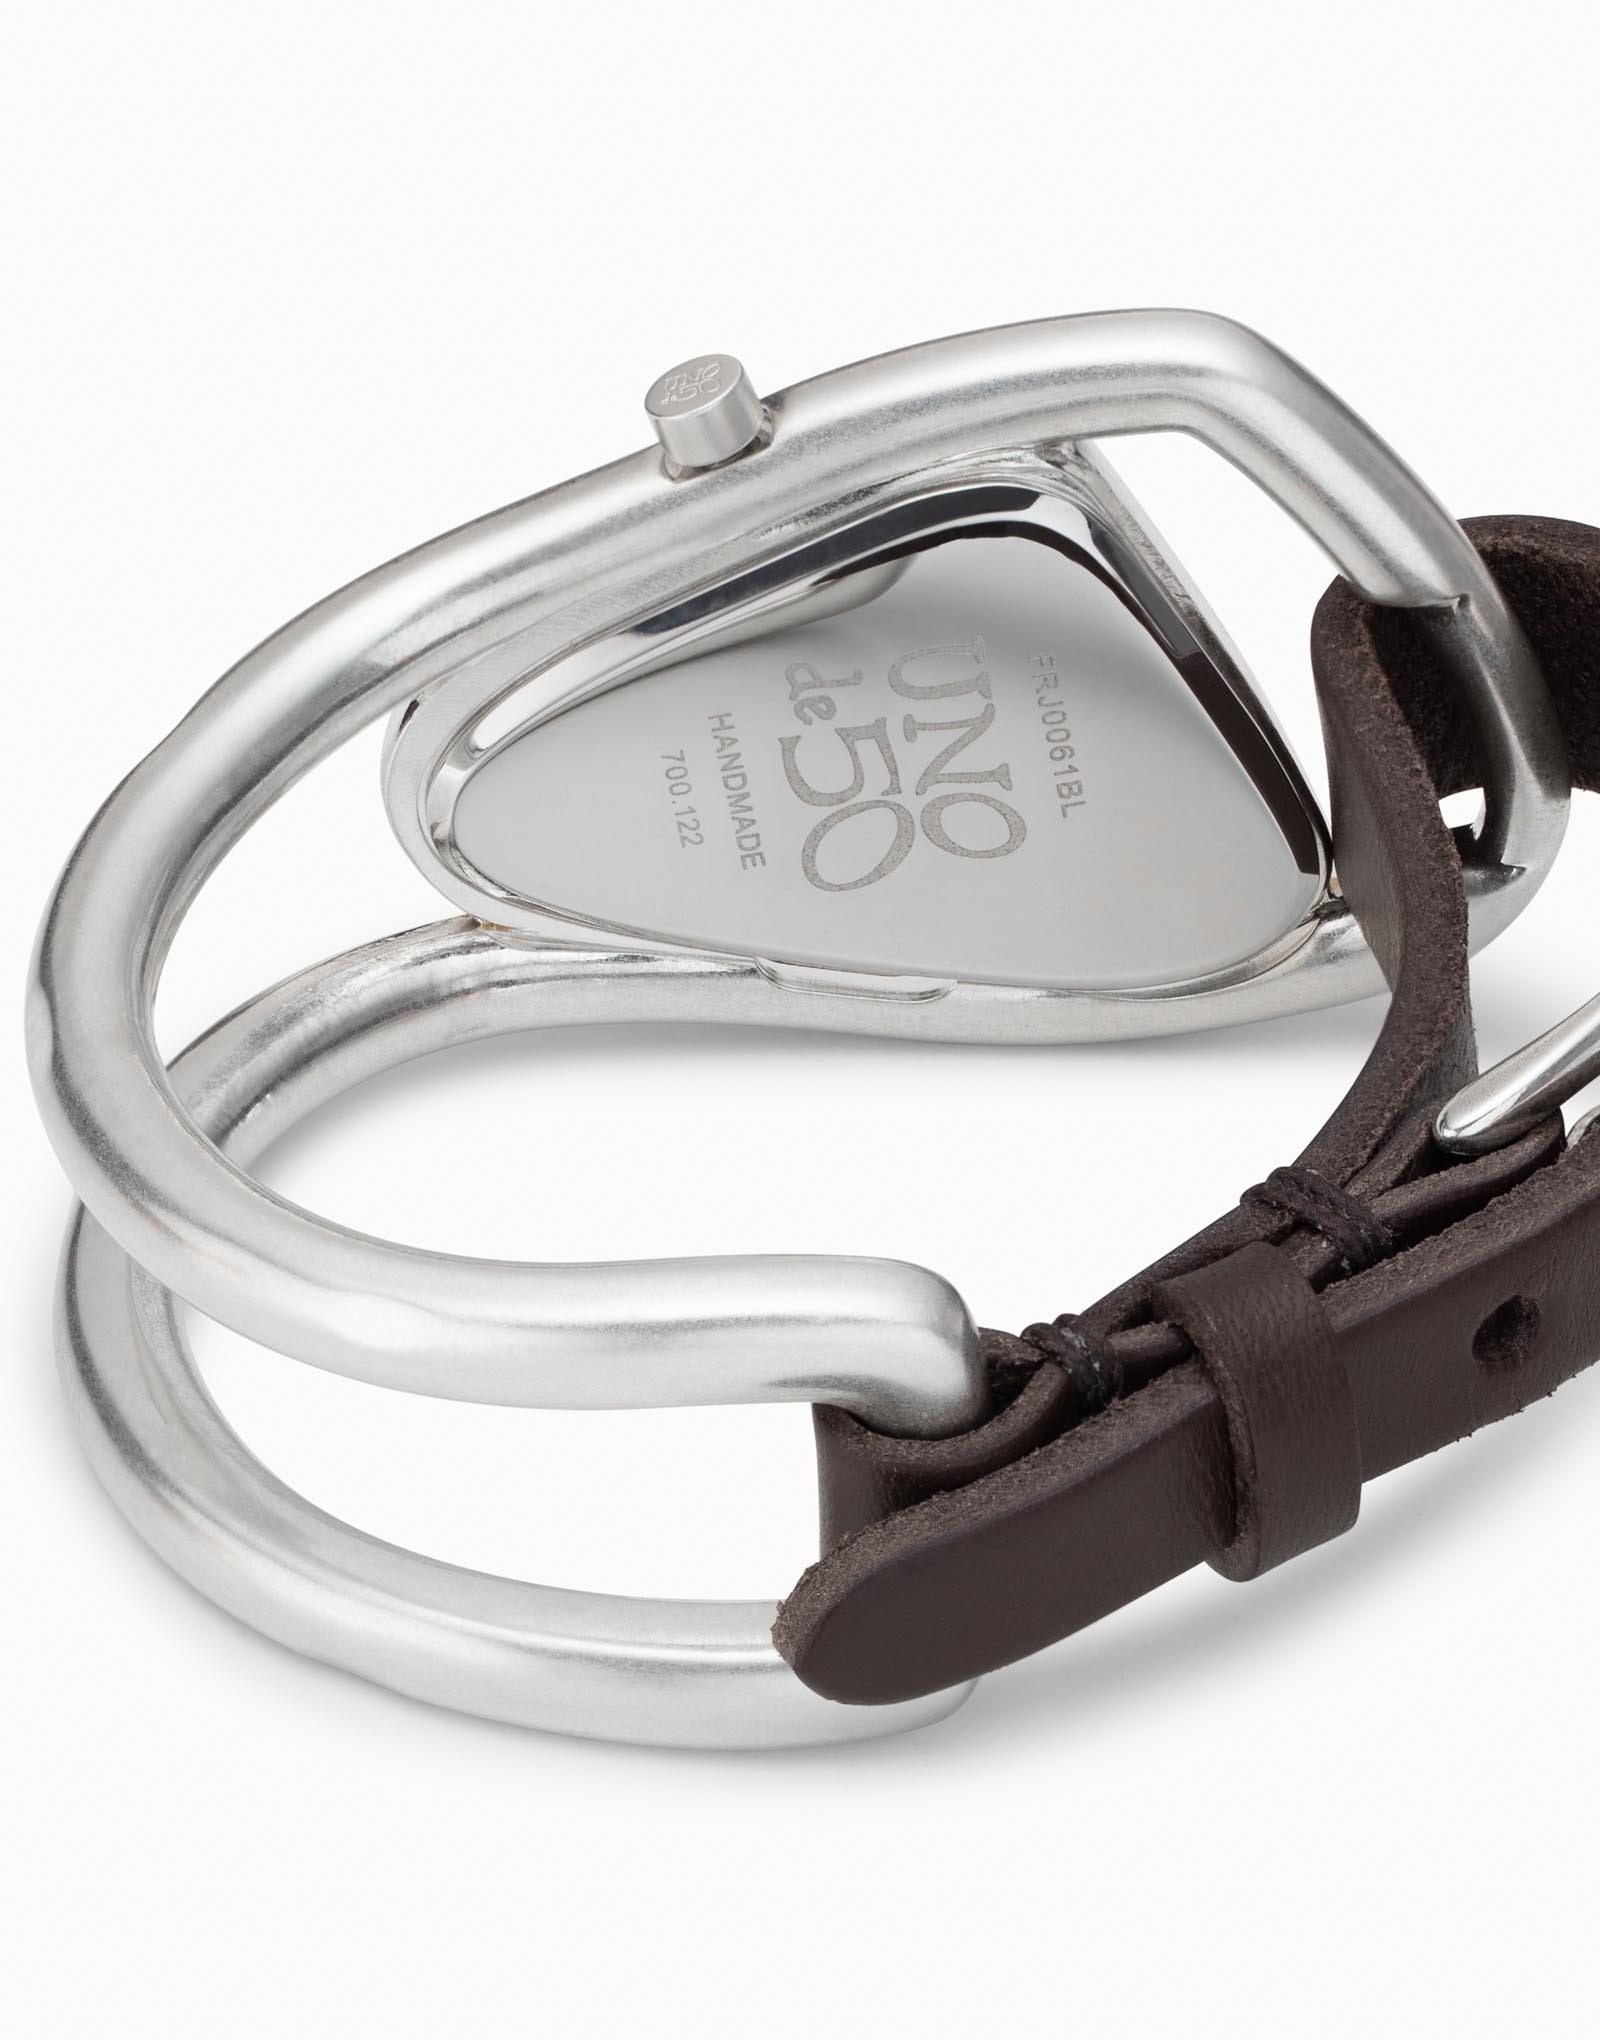 Orologio da donna Unode50 in metallo placcato argento con cinturino trasformabile in bracciale, Argent, large image number null